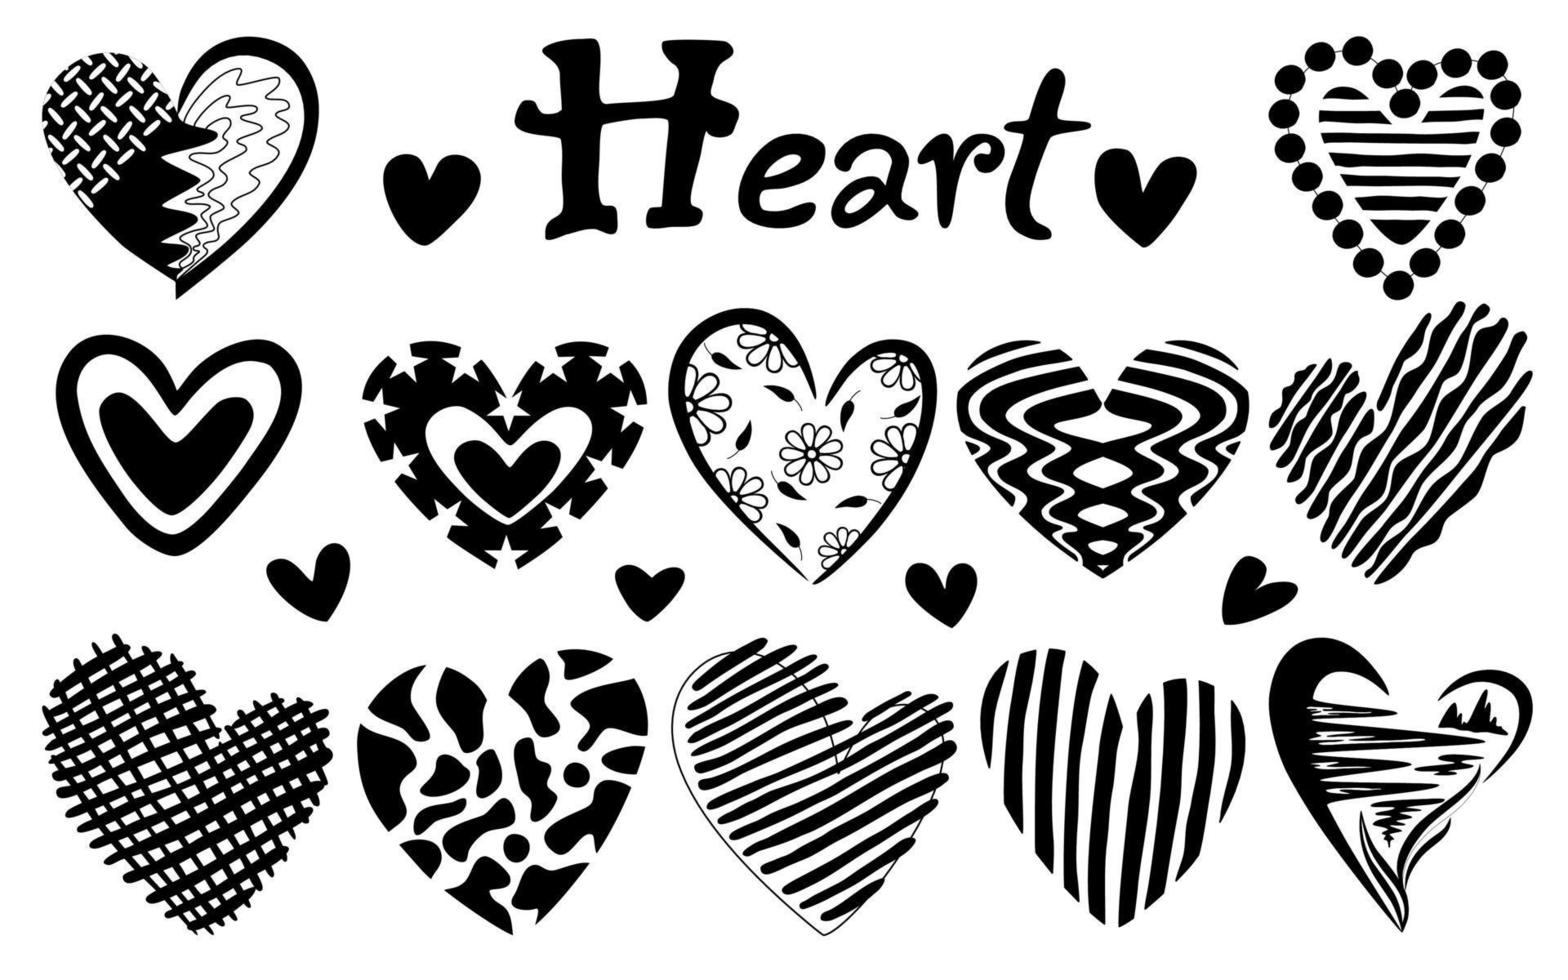 ilustração vetorial de coração preto definir padrões de design com estilos de doodle vetor